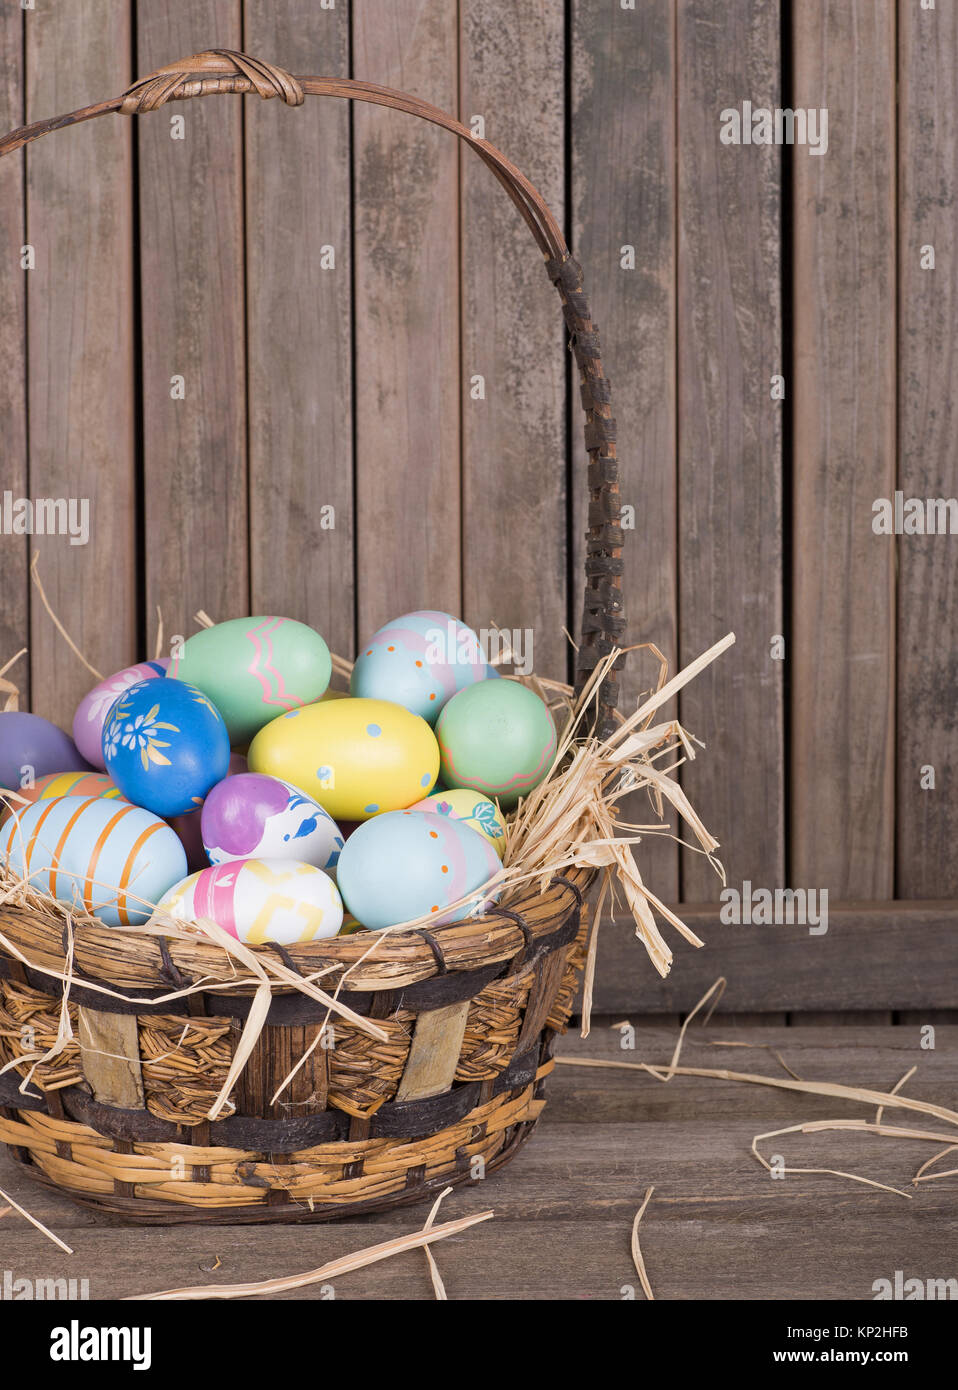 Les oeufs de Pâques colorés dans un panier sur une surface en bois Banque D'Images